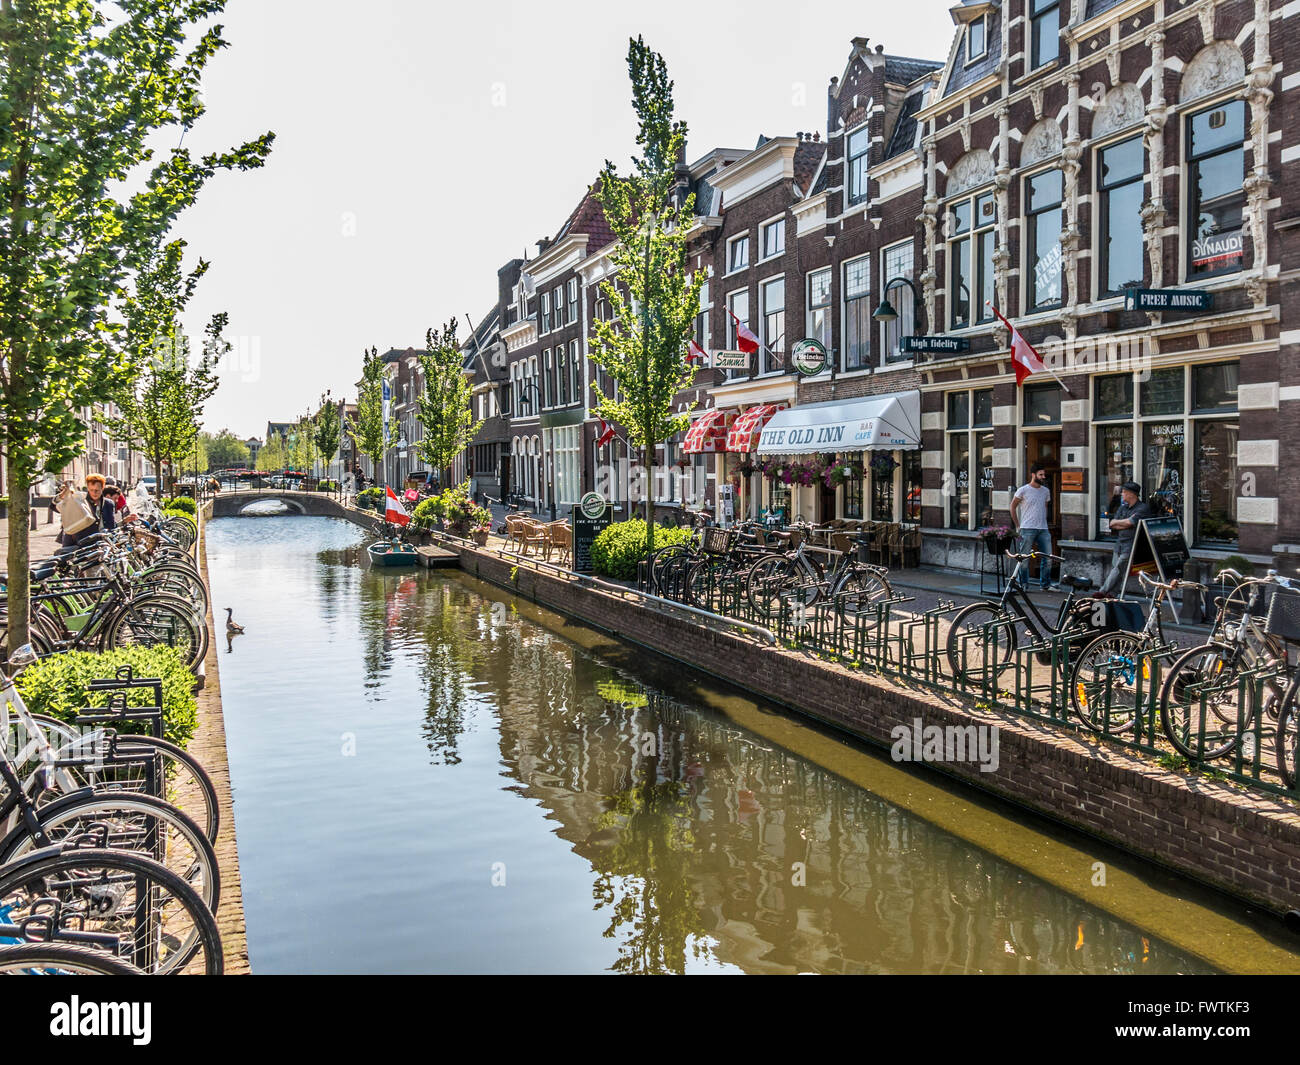 Bicicletas y casas antiguas en canal Turfmarkt en Gouda, Países Bajos Foto de stock